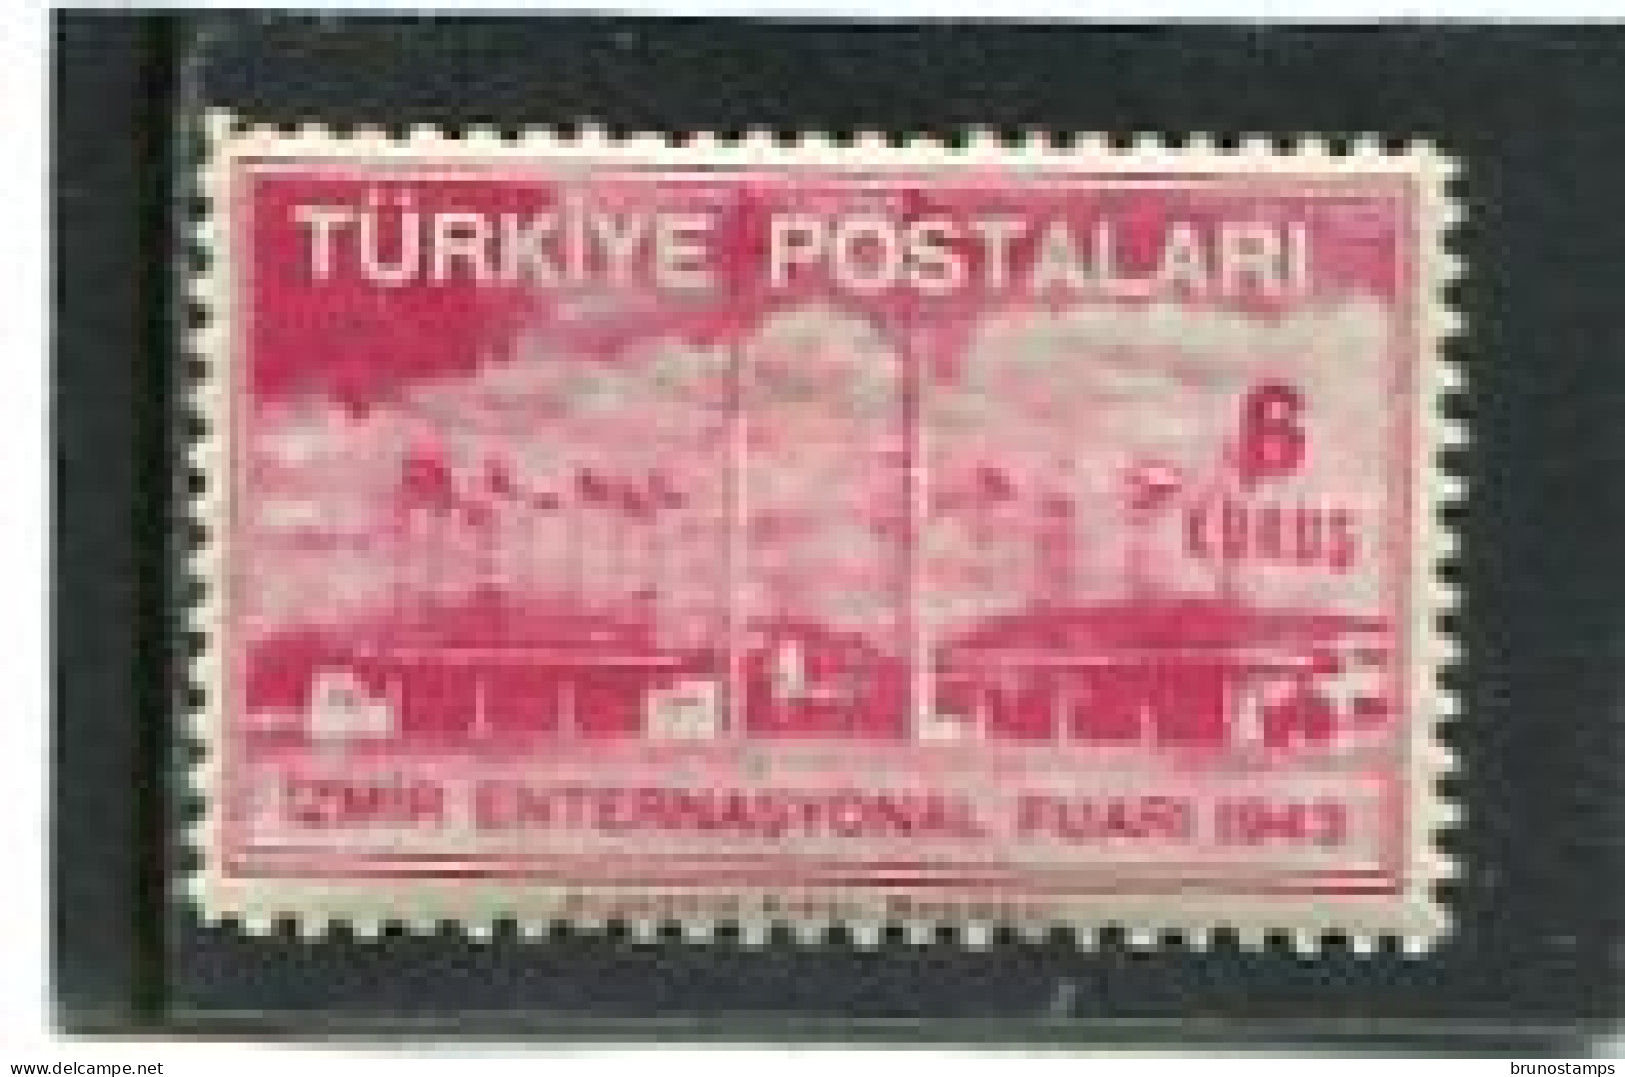 TURKEY/TURKIYE - 1943   6k  EXPO  MINT NH - Unused Stamps